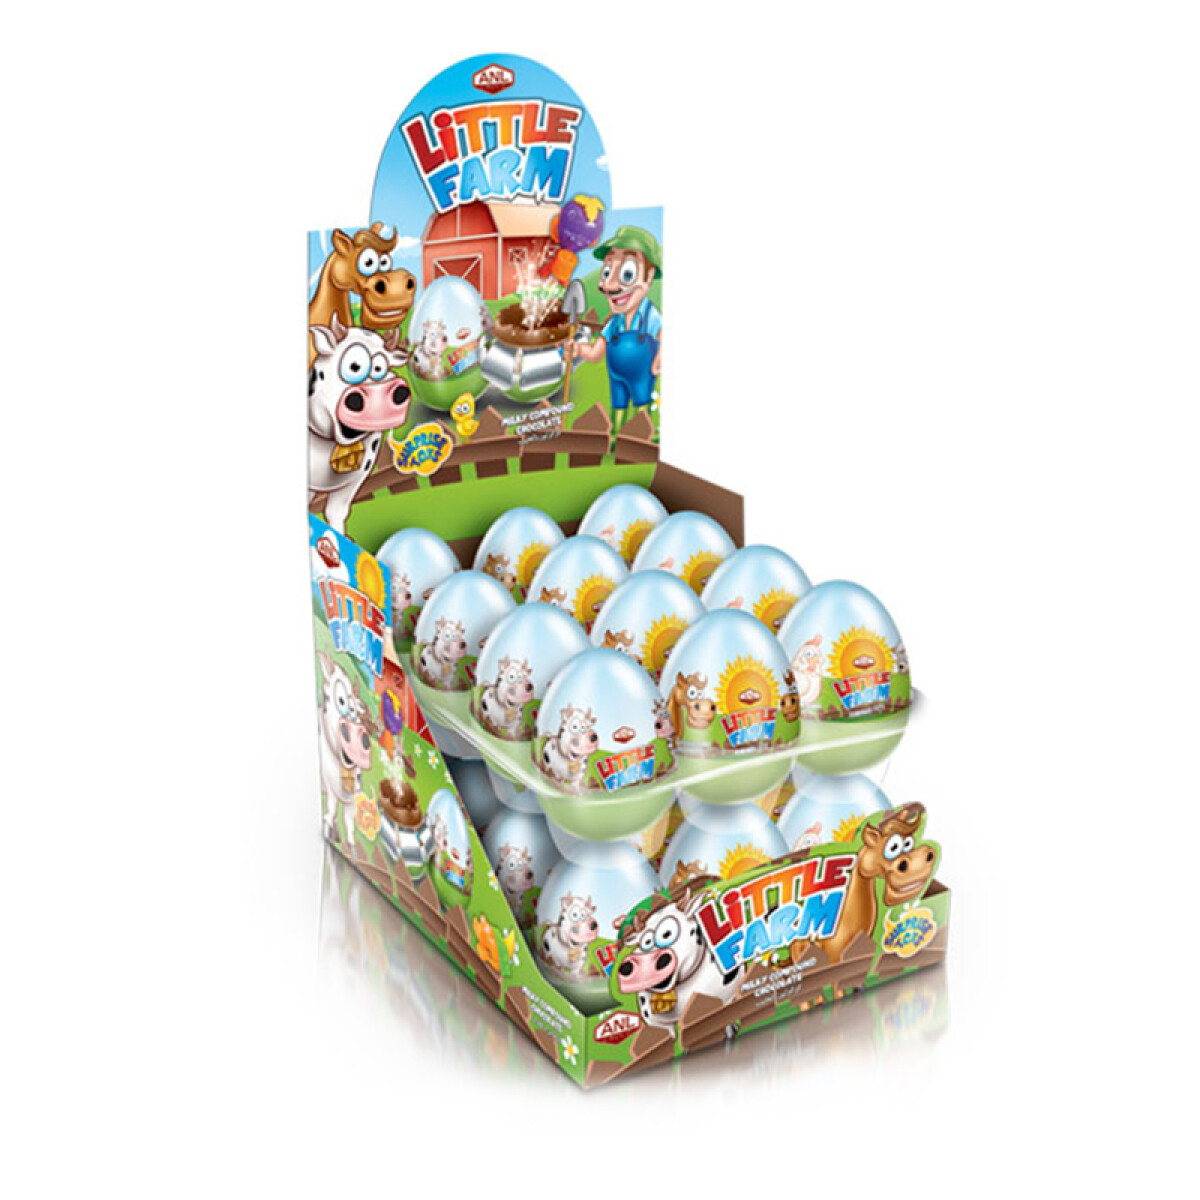 Huevo de Pascua ANL x24 unidades - Little Farm 